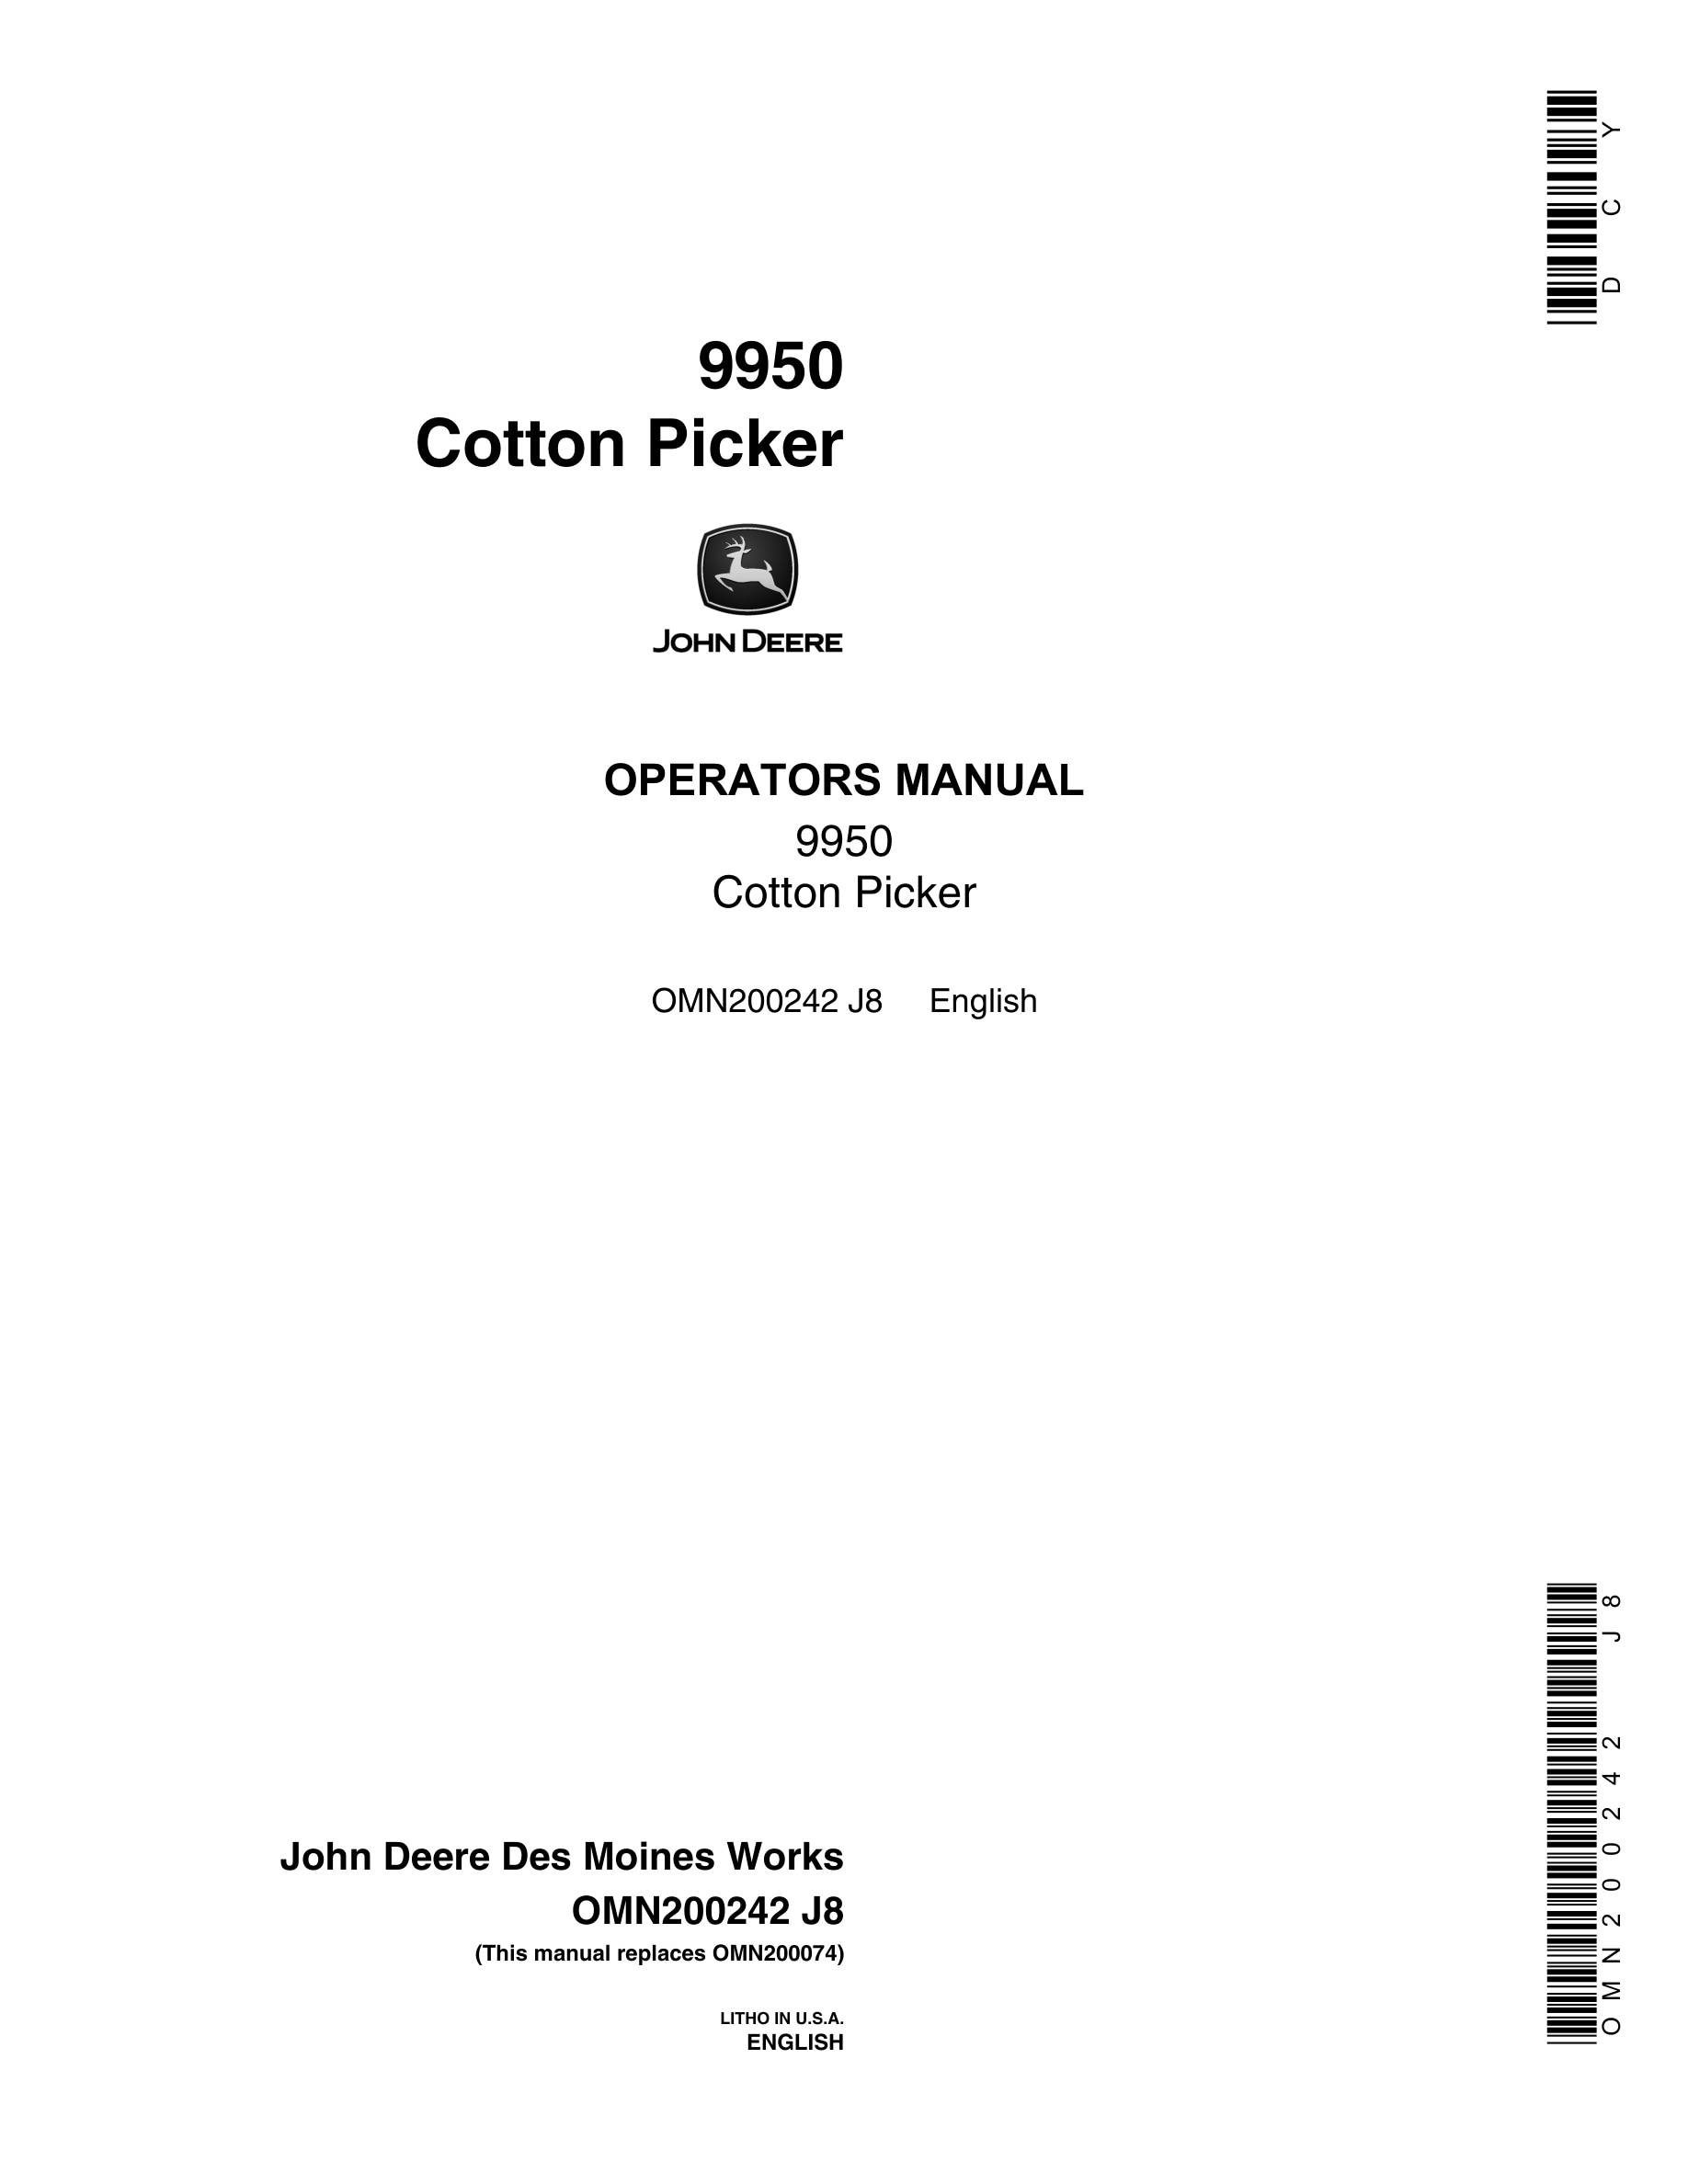 John Deere 9950 Cotton Picker Operator Manual OMN200242-1